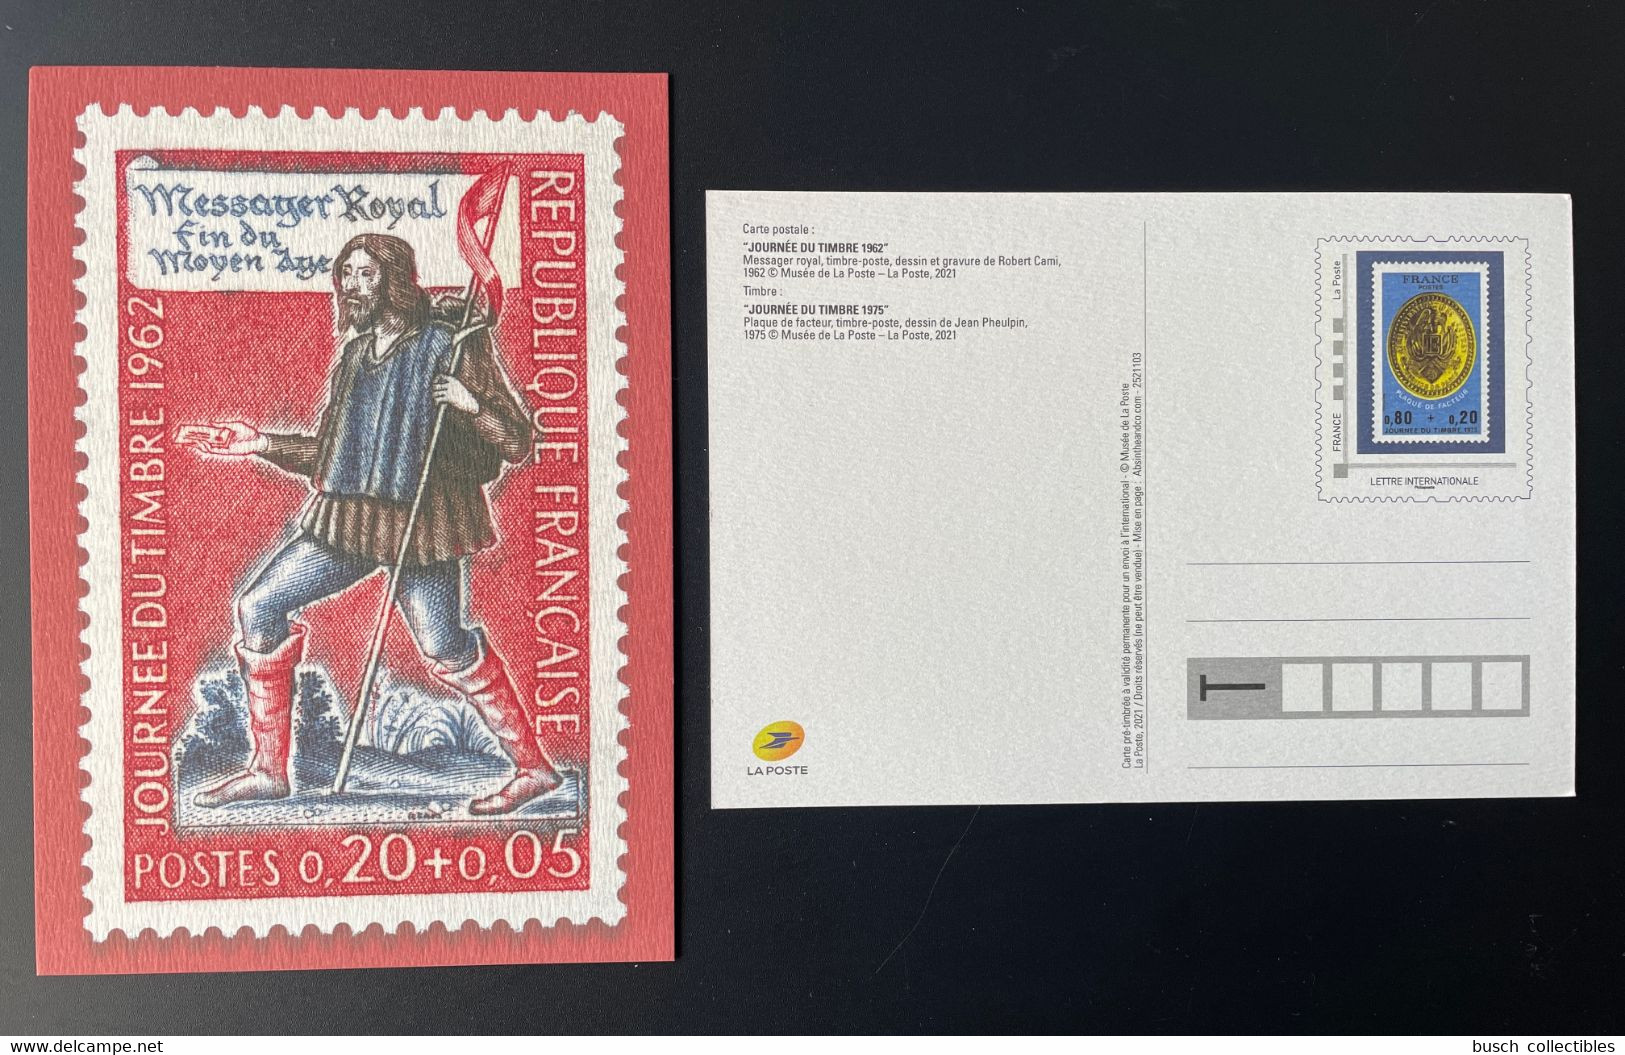 France 2021 - Carte Postale Entier Journée Du Timbre 1962 Messager Royal Fin Du Moyen Âge - Pseudo-officiële  Postwaardestukken